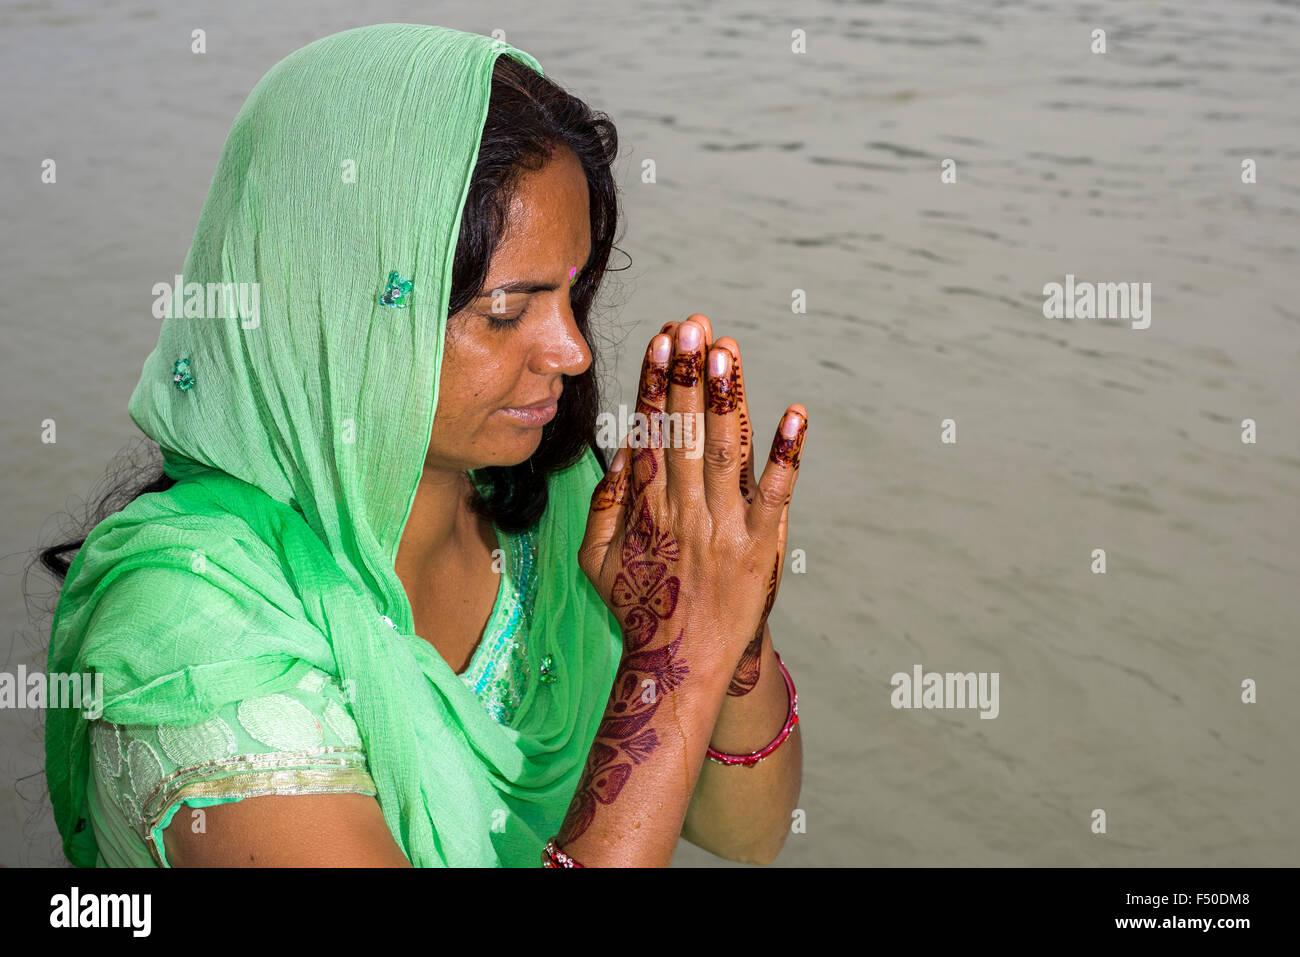 Une jeune femme avec de longs cheveux noirs, mains peintes au henné et une robe verte est priant au ghats du fleuve saint Ganges Banque D'Images